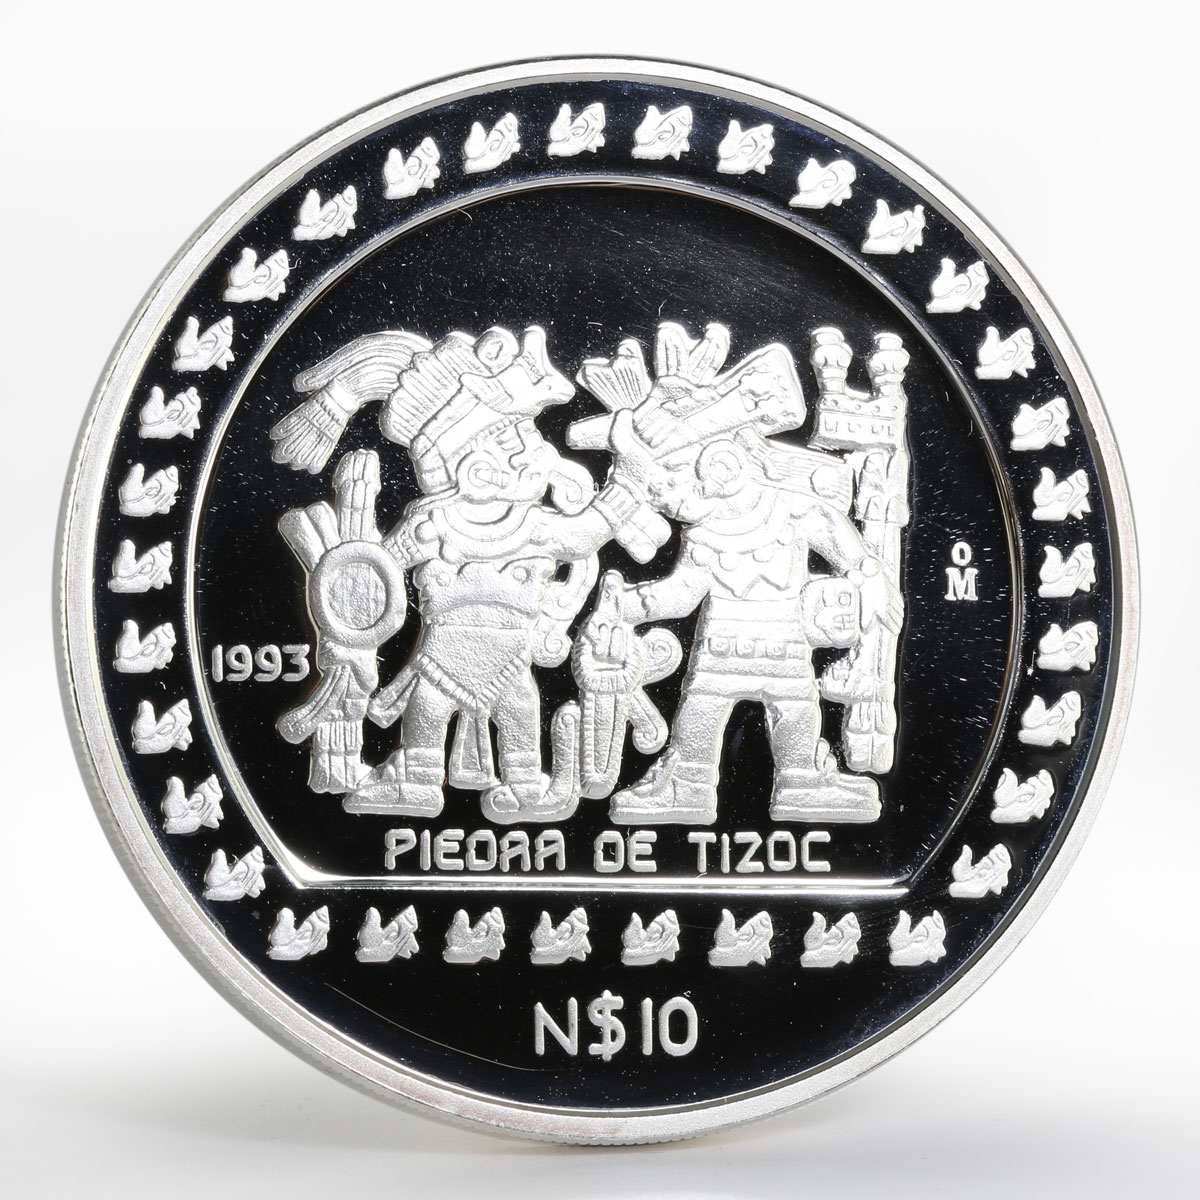 Mexico 10 pesos Piedra de Tizoc proof silver coin 1993